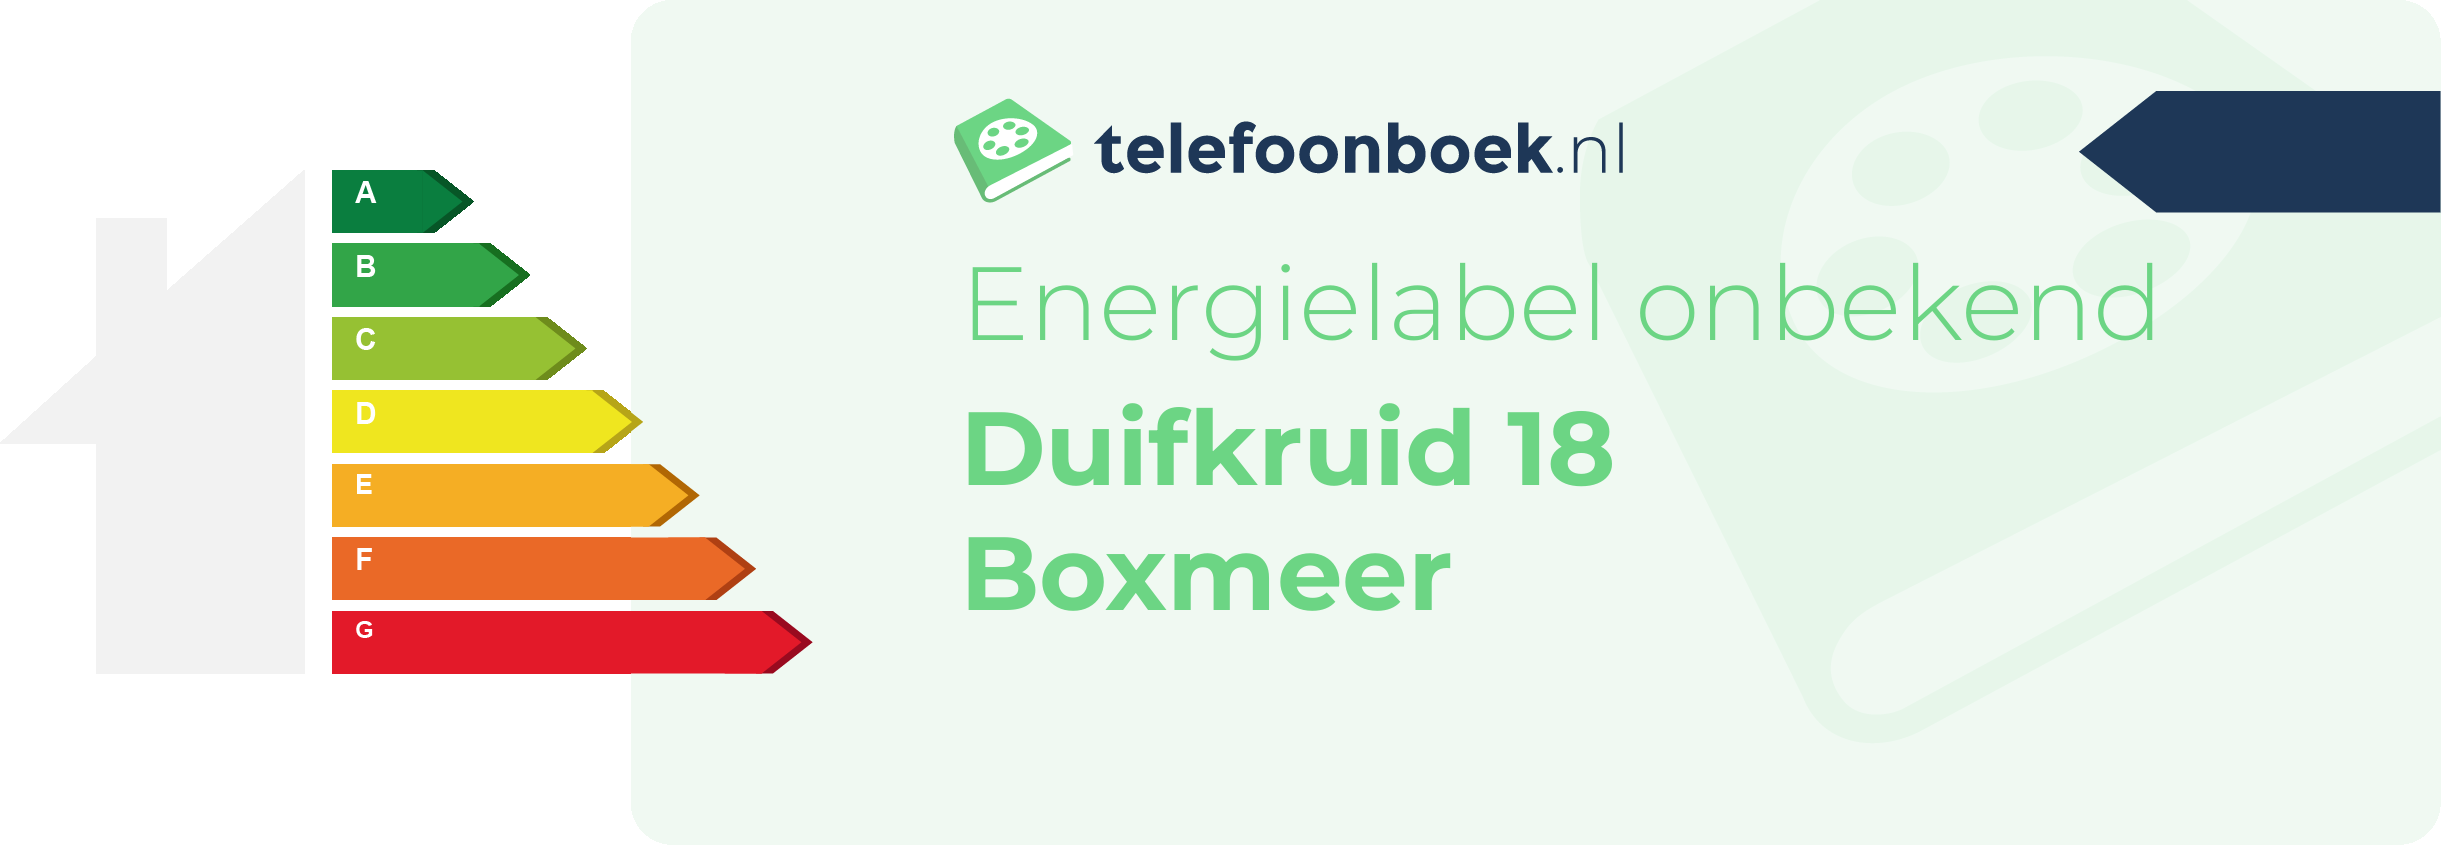 Energielabel Duifkruid 18 Boxmeer